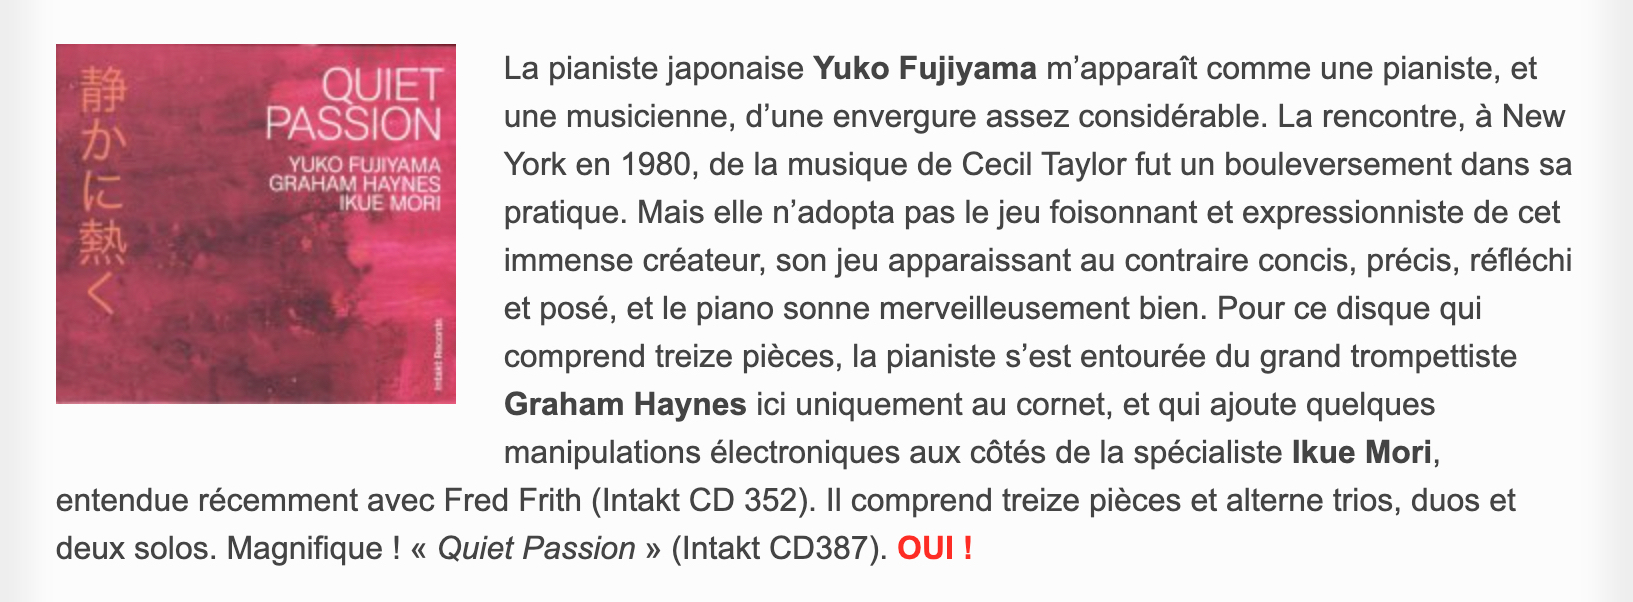 La pianiste japonaise Yuko Fujiyama m’apparaît comme une pianiste, et une musicienne, d’une envergure assez considérable. La rencontre, à New York en 1980, de la musique de Cecil Taylor fut un bouleversement dans sa pratique. Mais elle n’adopta pas le jeu foisonnant et expressionniste de cet immense créateur, son jeu apparaissant au contraire concis, précis, réfléchi et posé, et le piano sonne merveilleusement bien. Pour ce disque qui comprend treize pièces, la pianiste s’est entourée du grand trompettiste Graham Haynes ici uniquement au cornet, et qui ajoute quelques manipulations électroniques aux côtés de la spécialiste Ikue Mori, entendue récemment avec Fred Frith (Intakt CD 352). Il comprend treize pièces et alterne trios, duos et deux solos. Magnifique ! « Quiet Passion » (Intakt CD387).